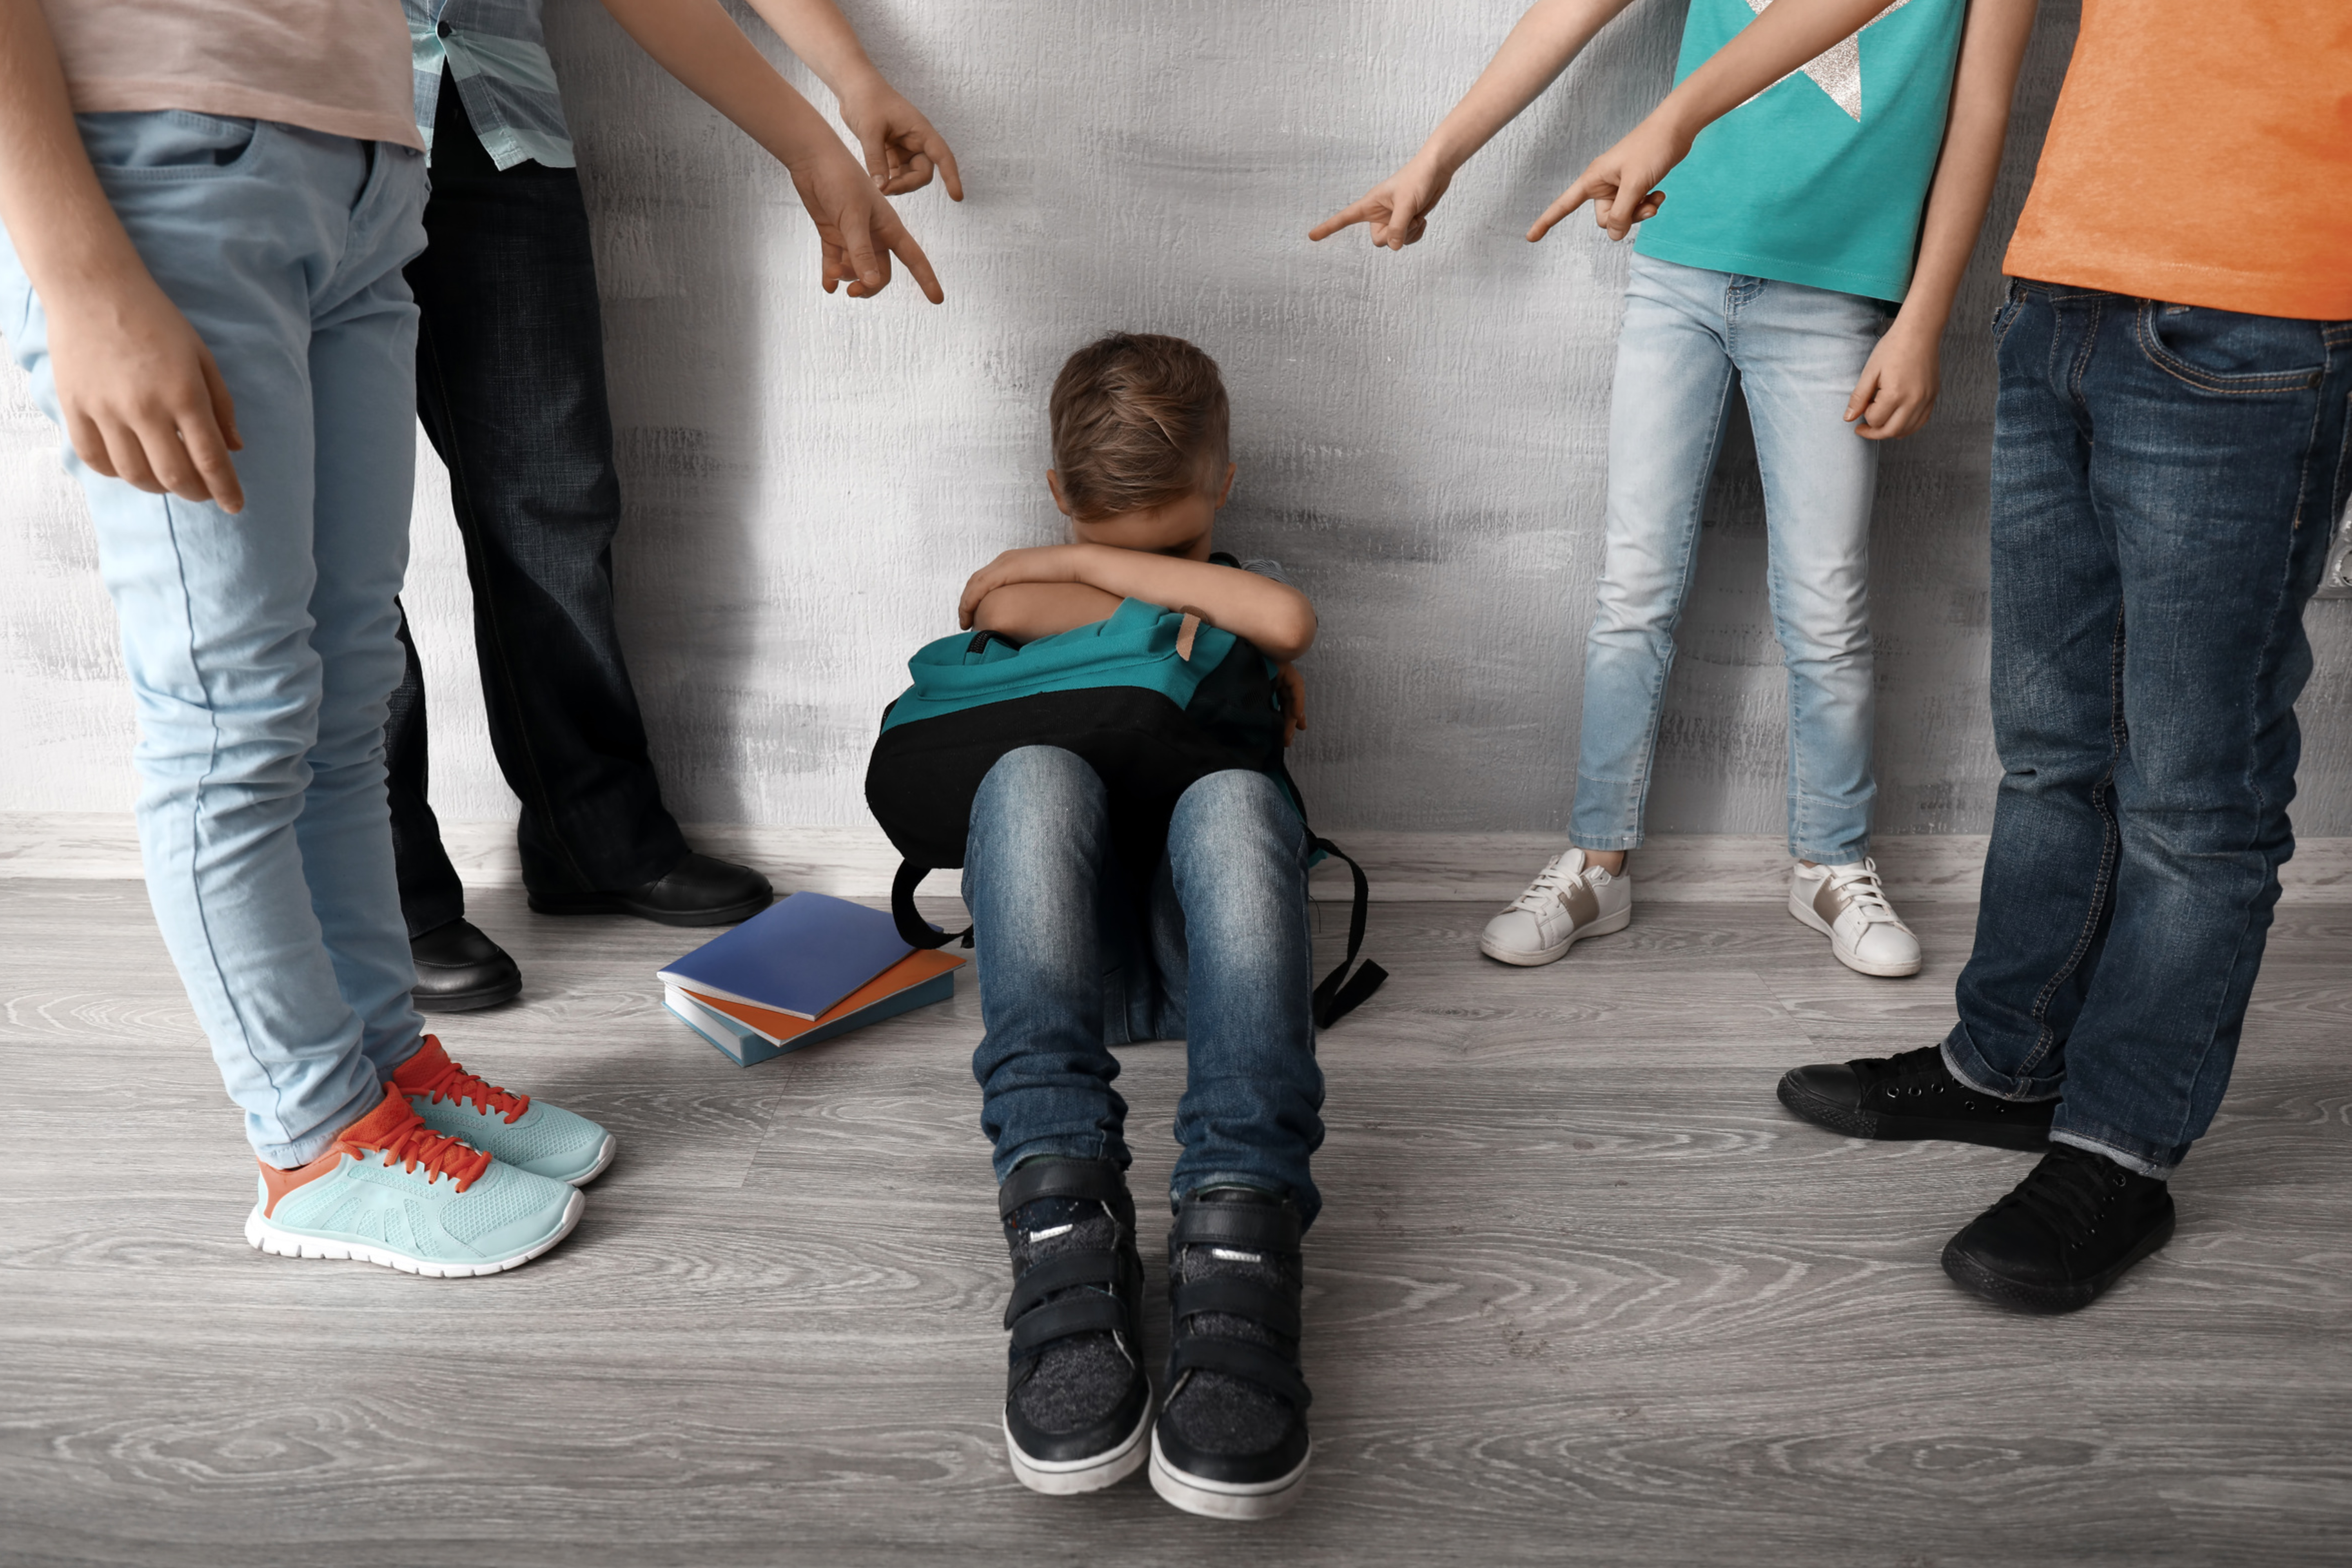 Bullying na escola: como acabar com este problema?